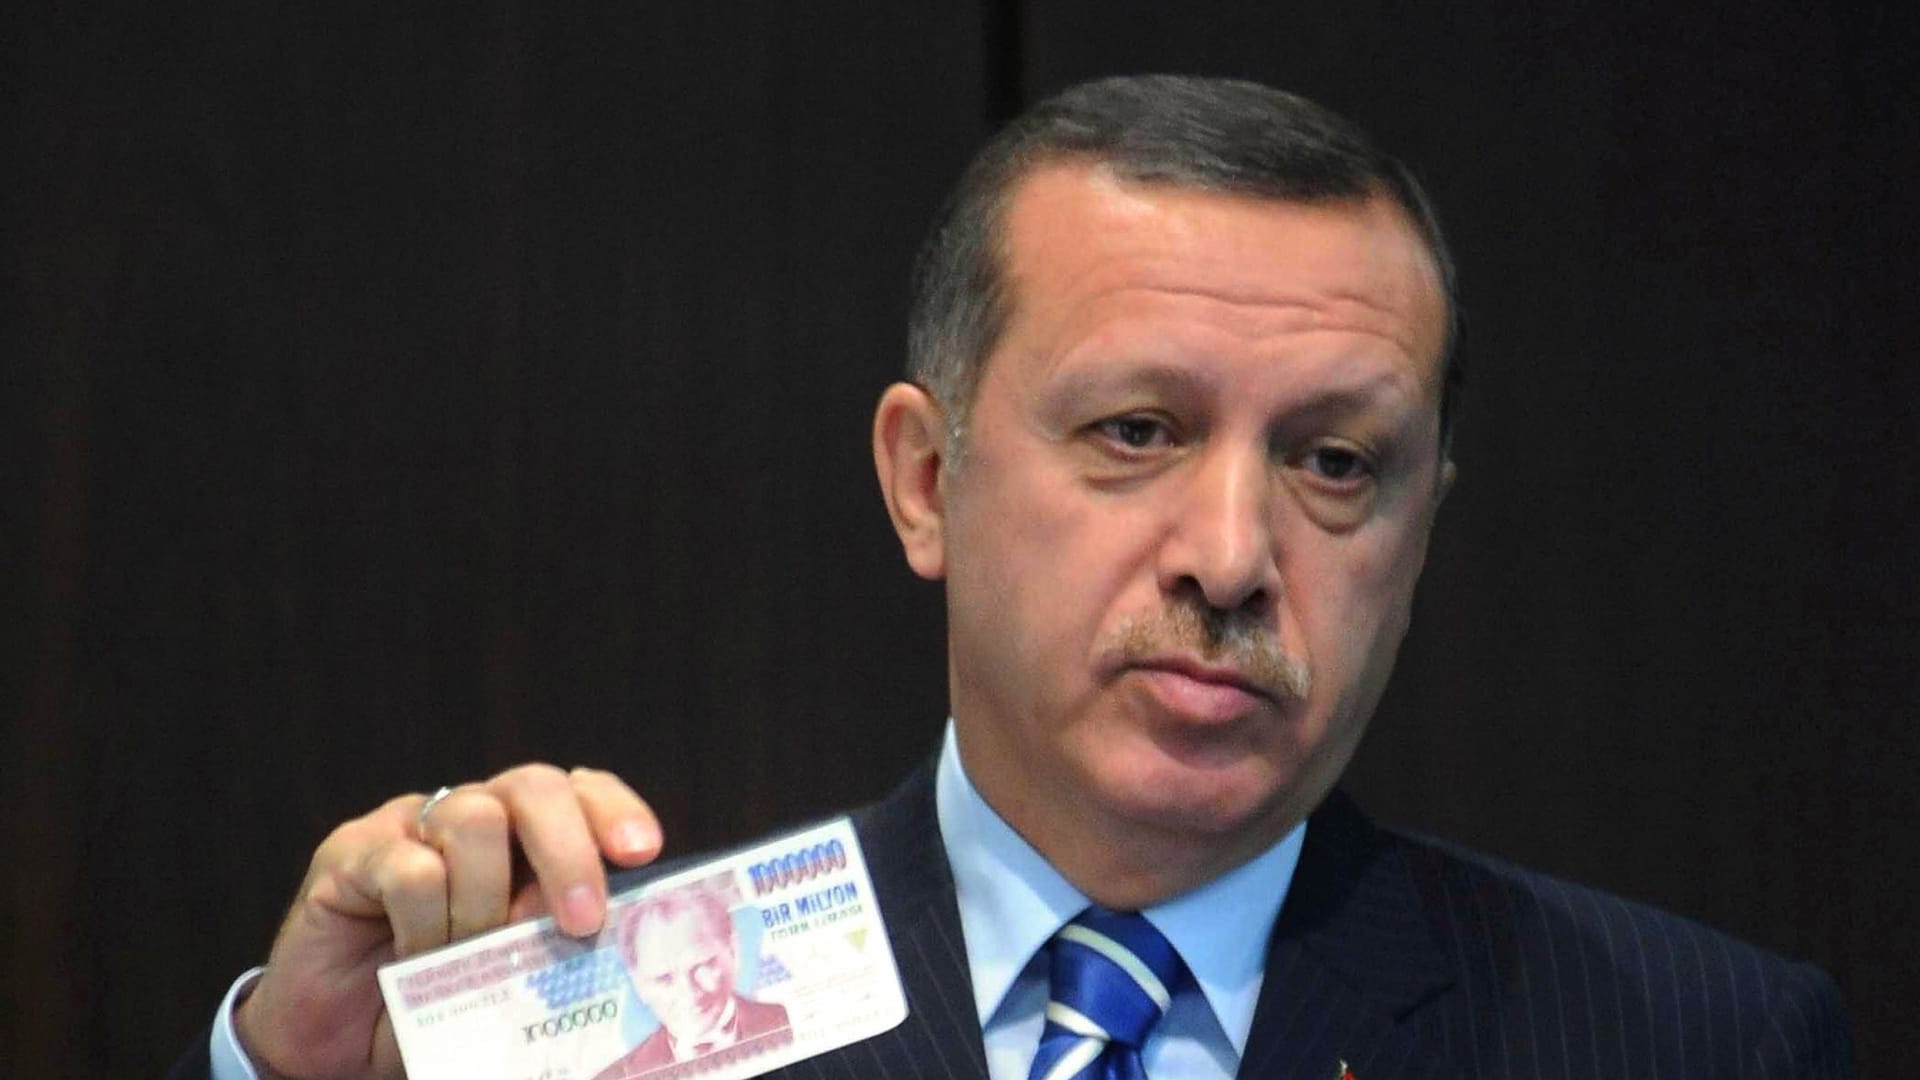 صورة ارشيفية للرئيس التركي رجب طيب أردوغان يحمل ورقة نقدية تركية عام 2008